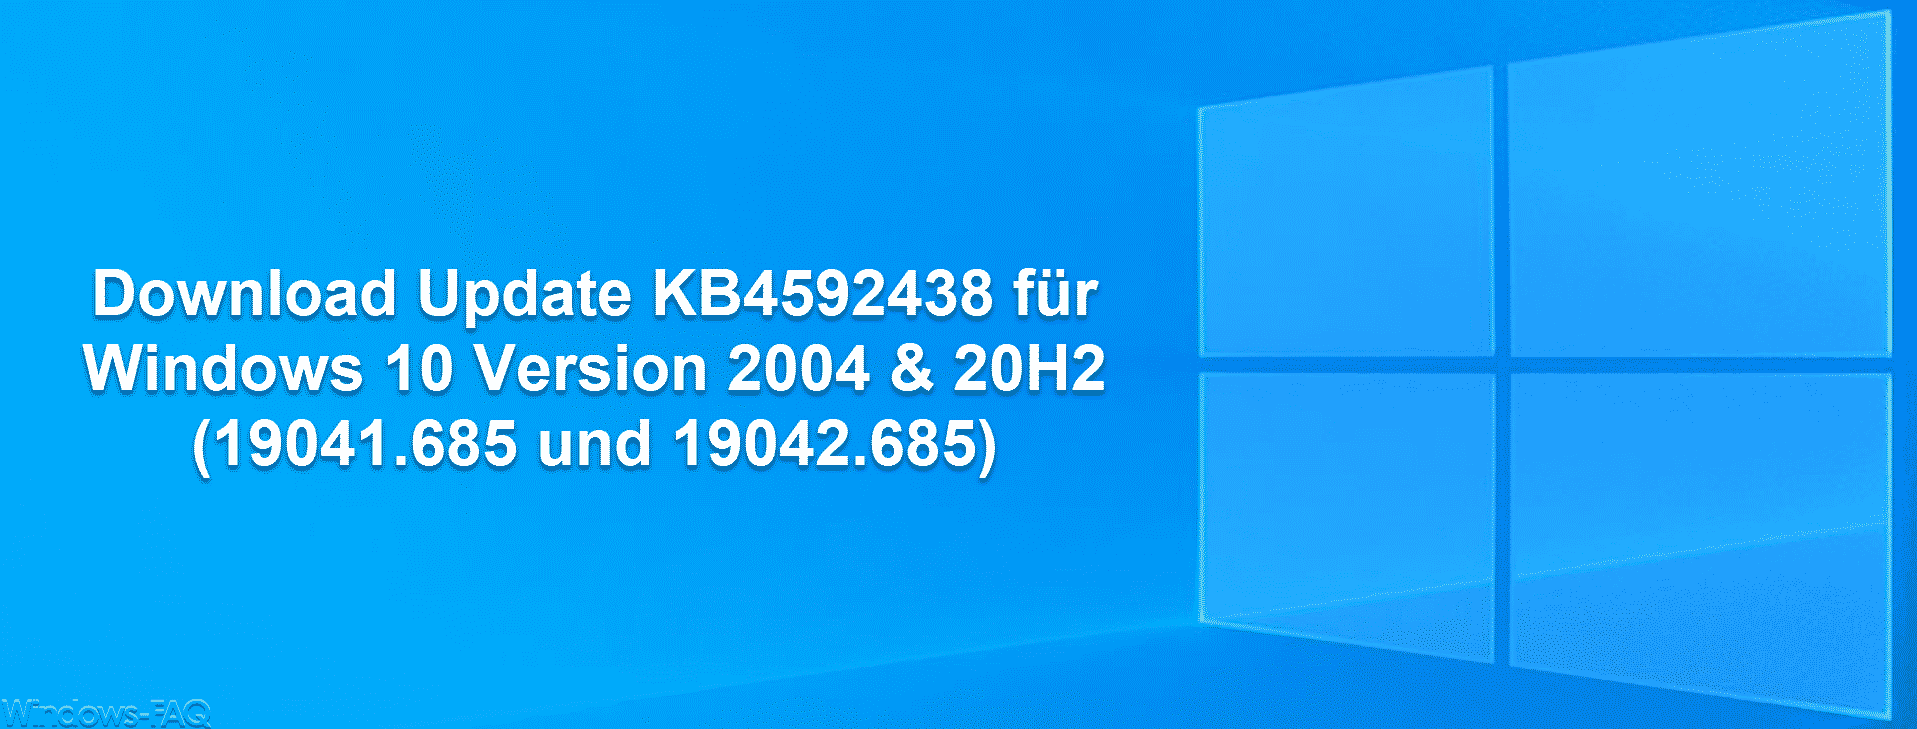 Download Update KB4592438 für Windows 10 Version 2004 & 20H2 (19041.685 und 19042.685)